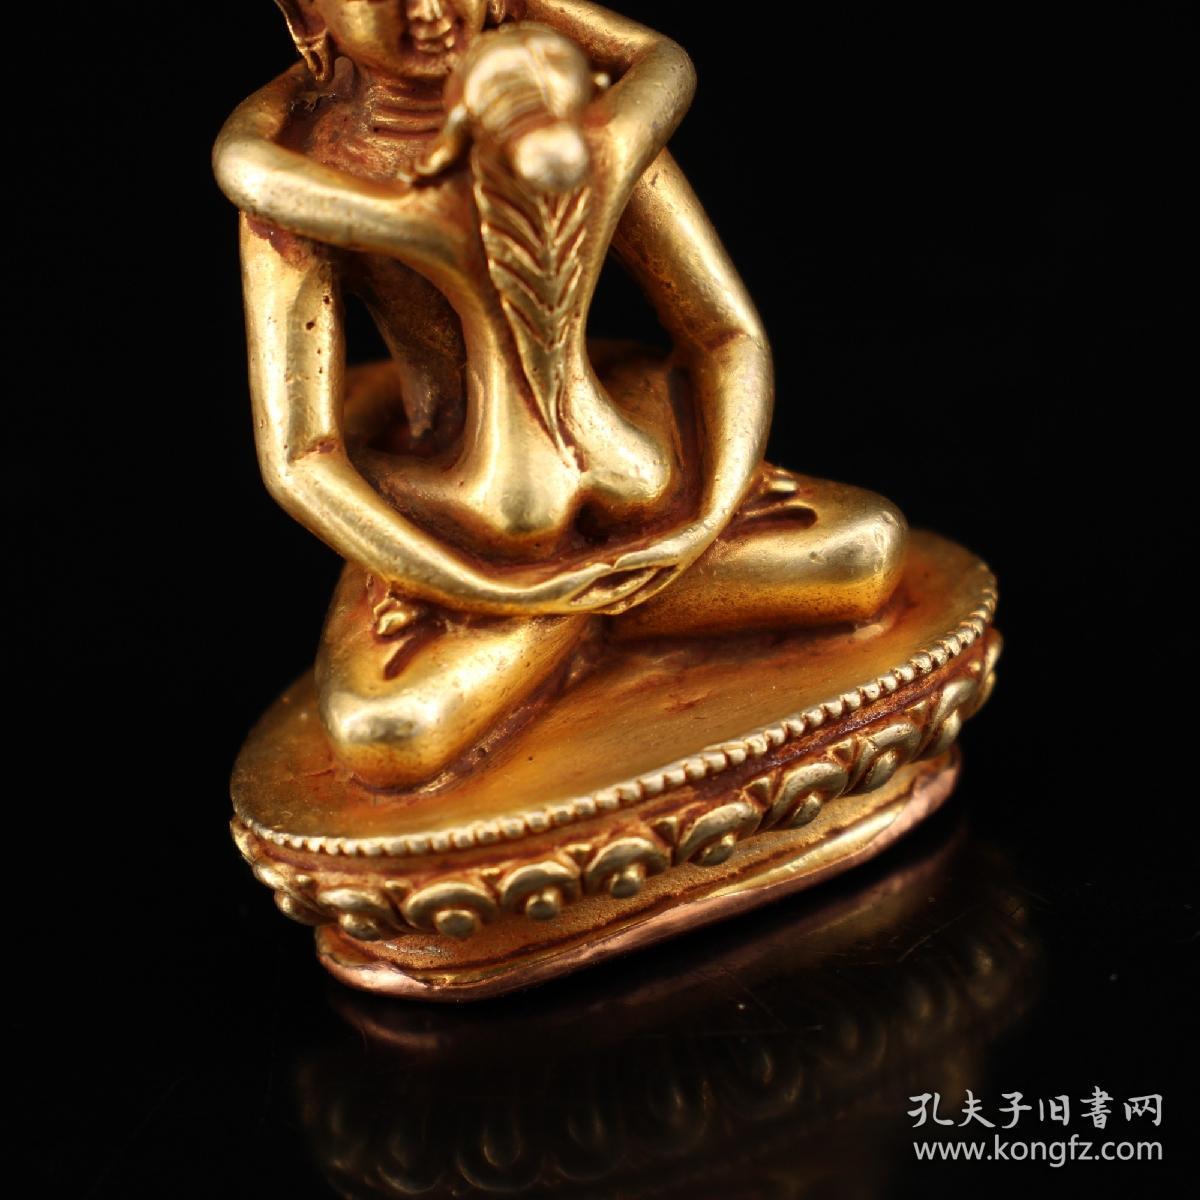 珍藏藏传密宗佛教尼泊尔藏佛欢喜佛袖珍铜像黄铜佛像